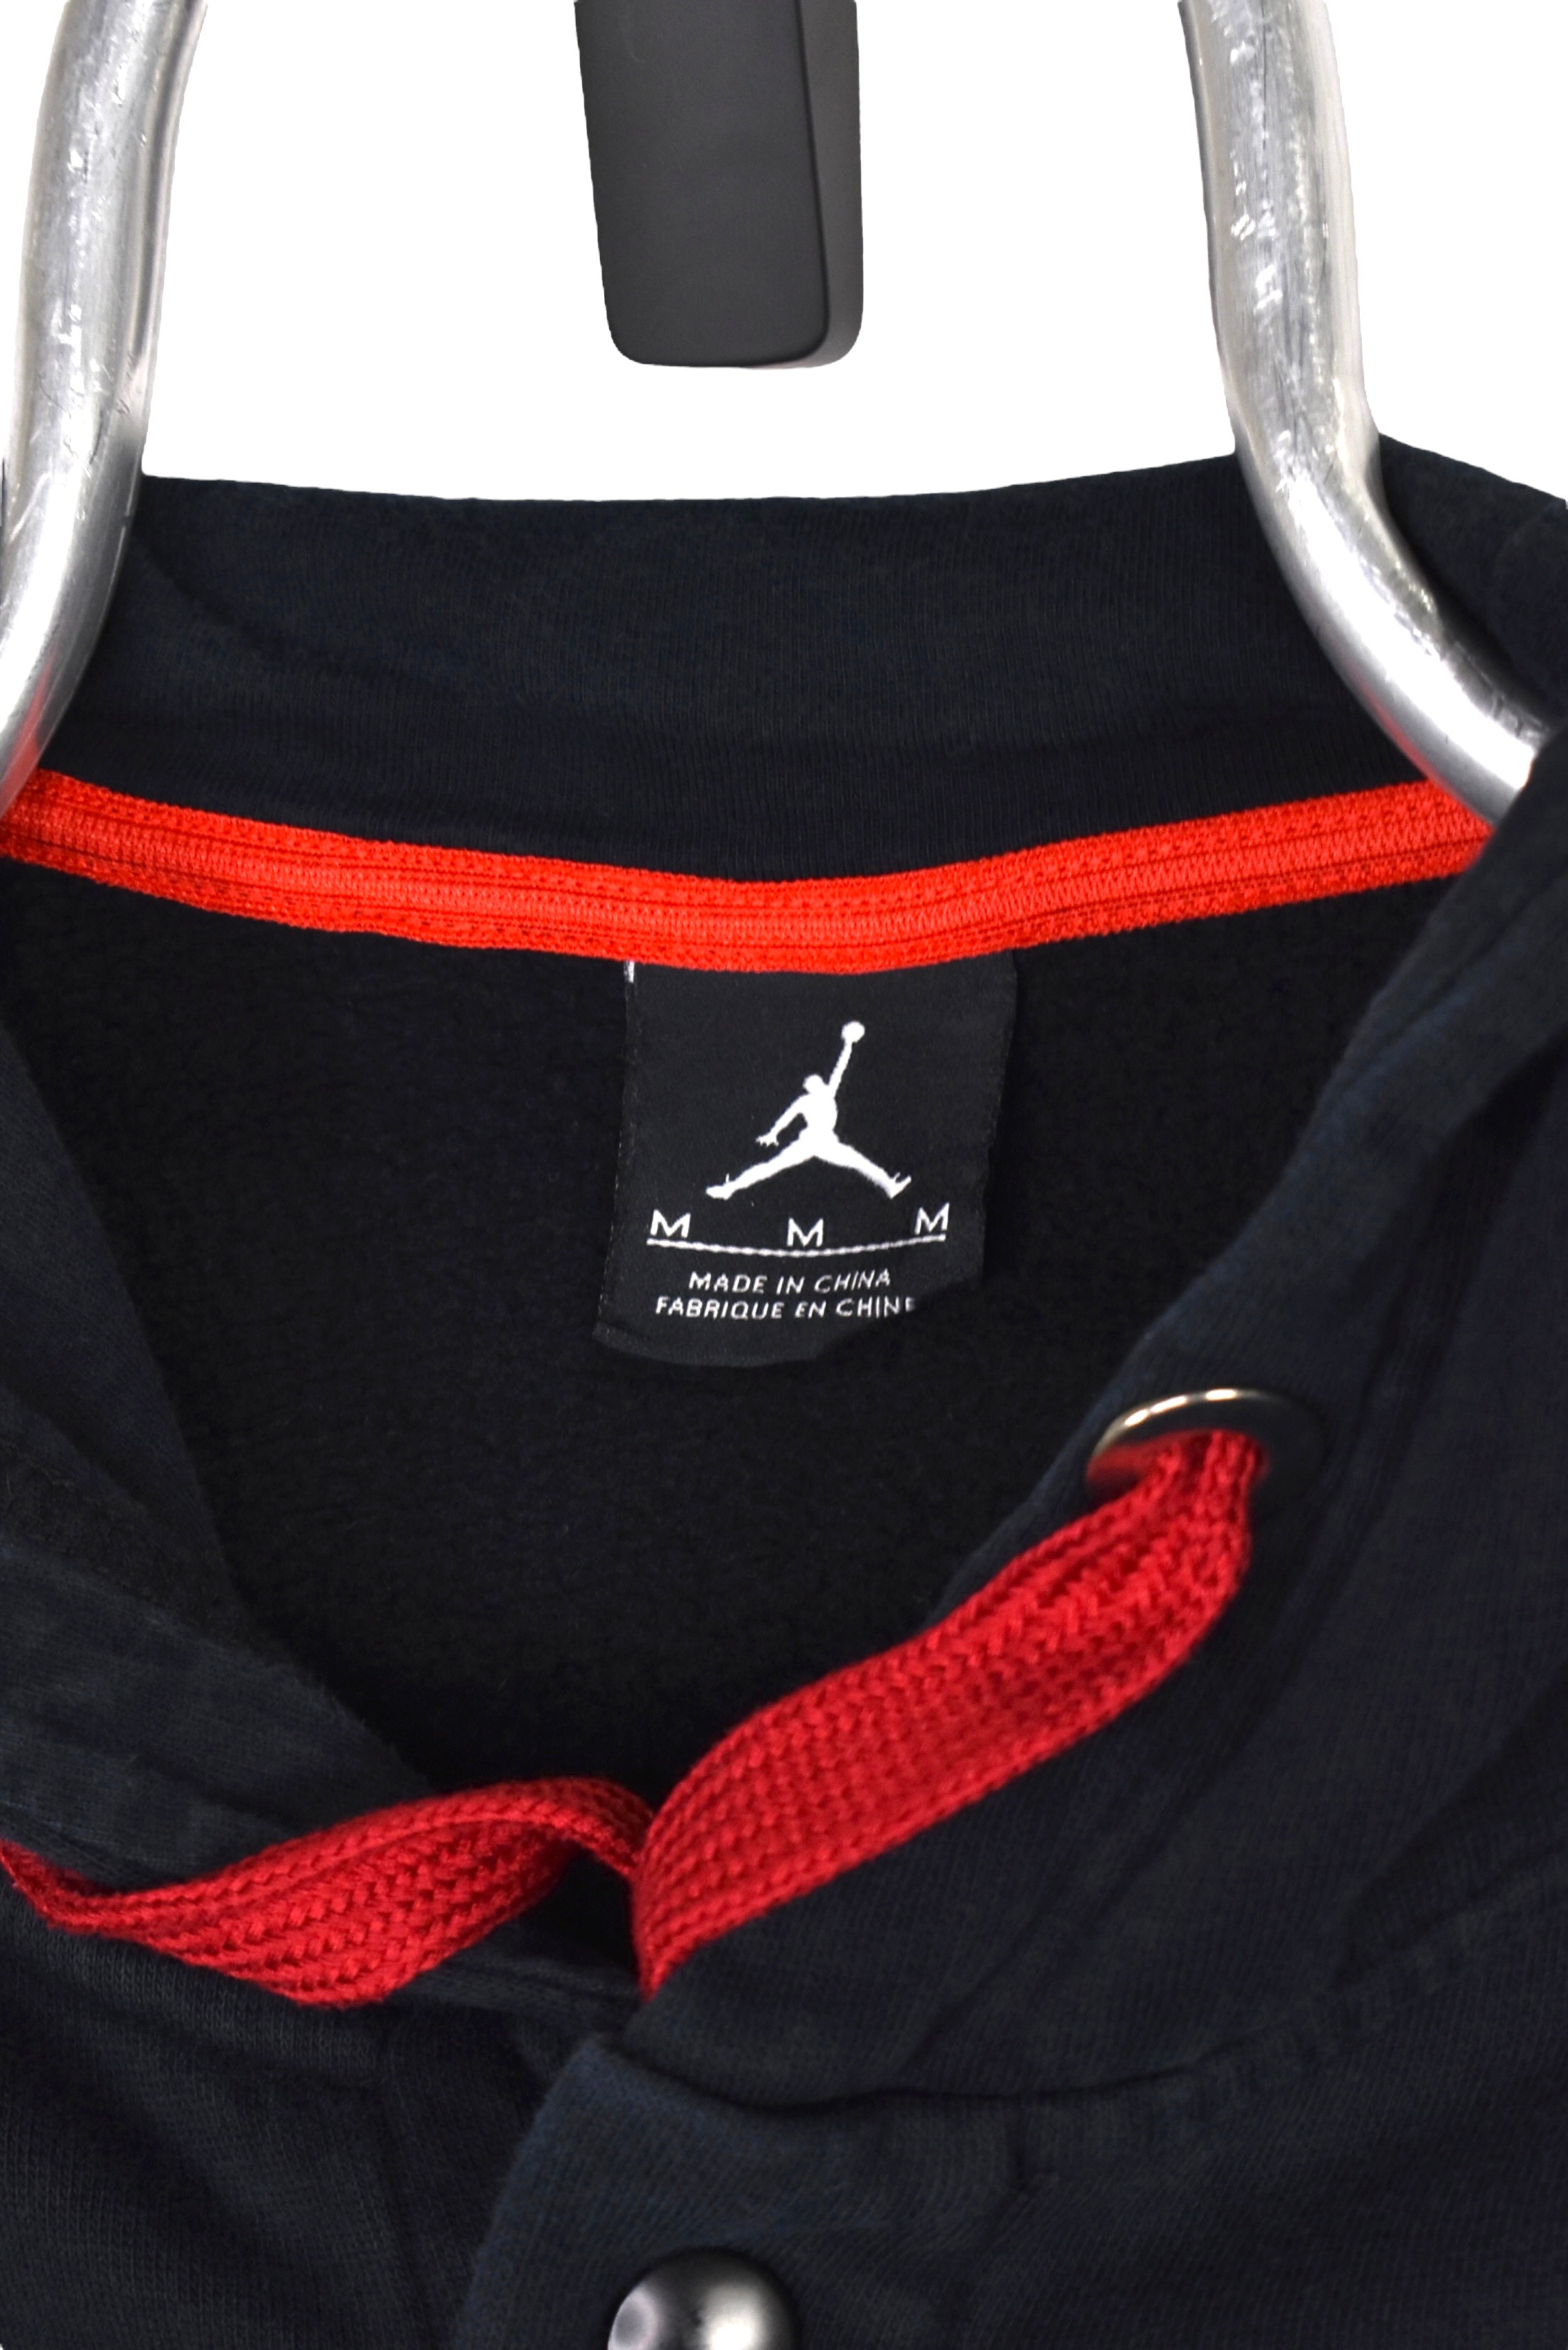 Vintage Nike Air Jordan jacket Medium, black embroidered hoodie